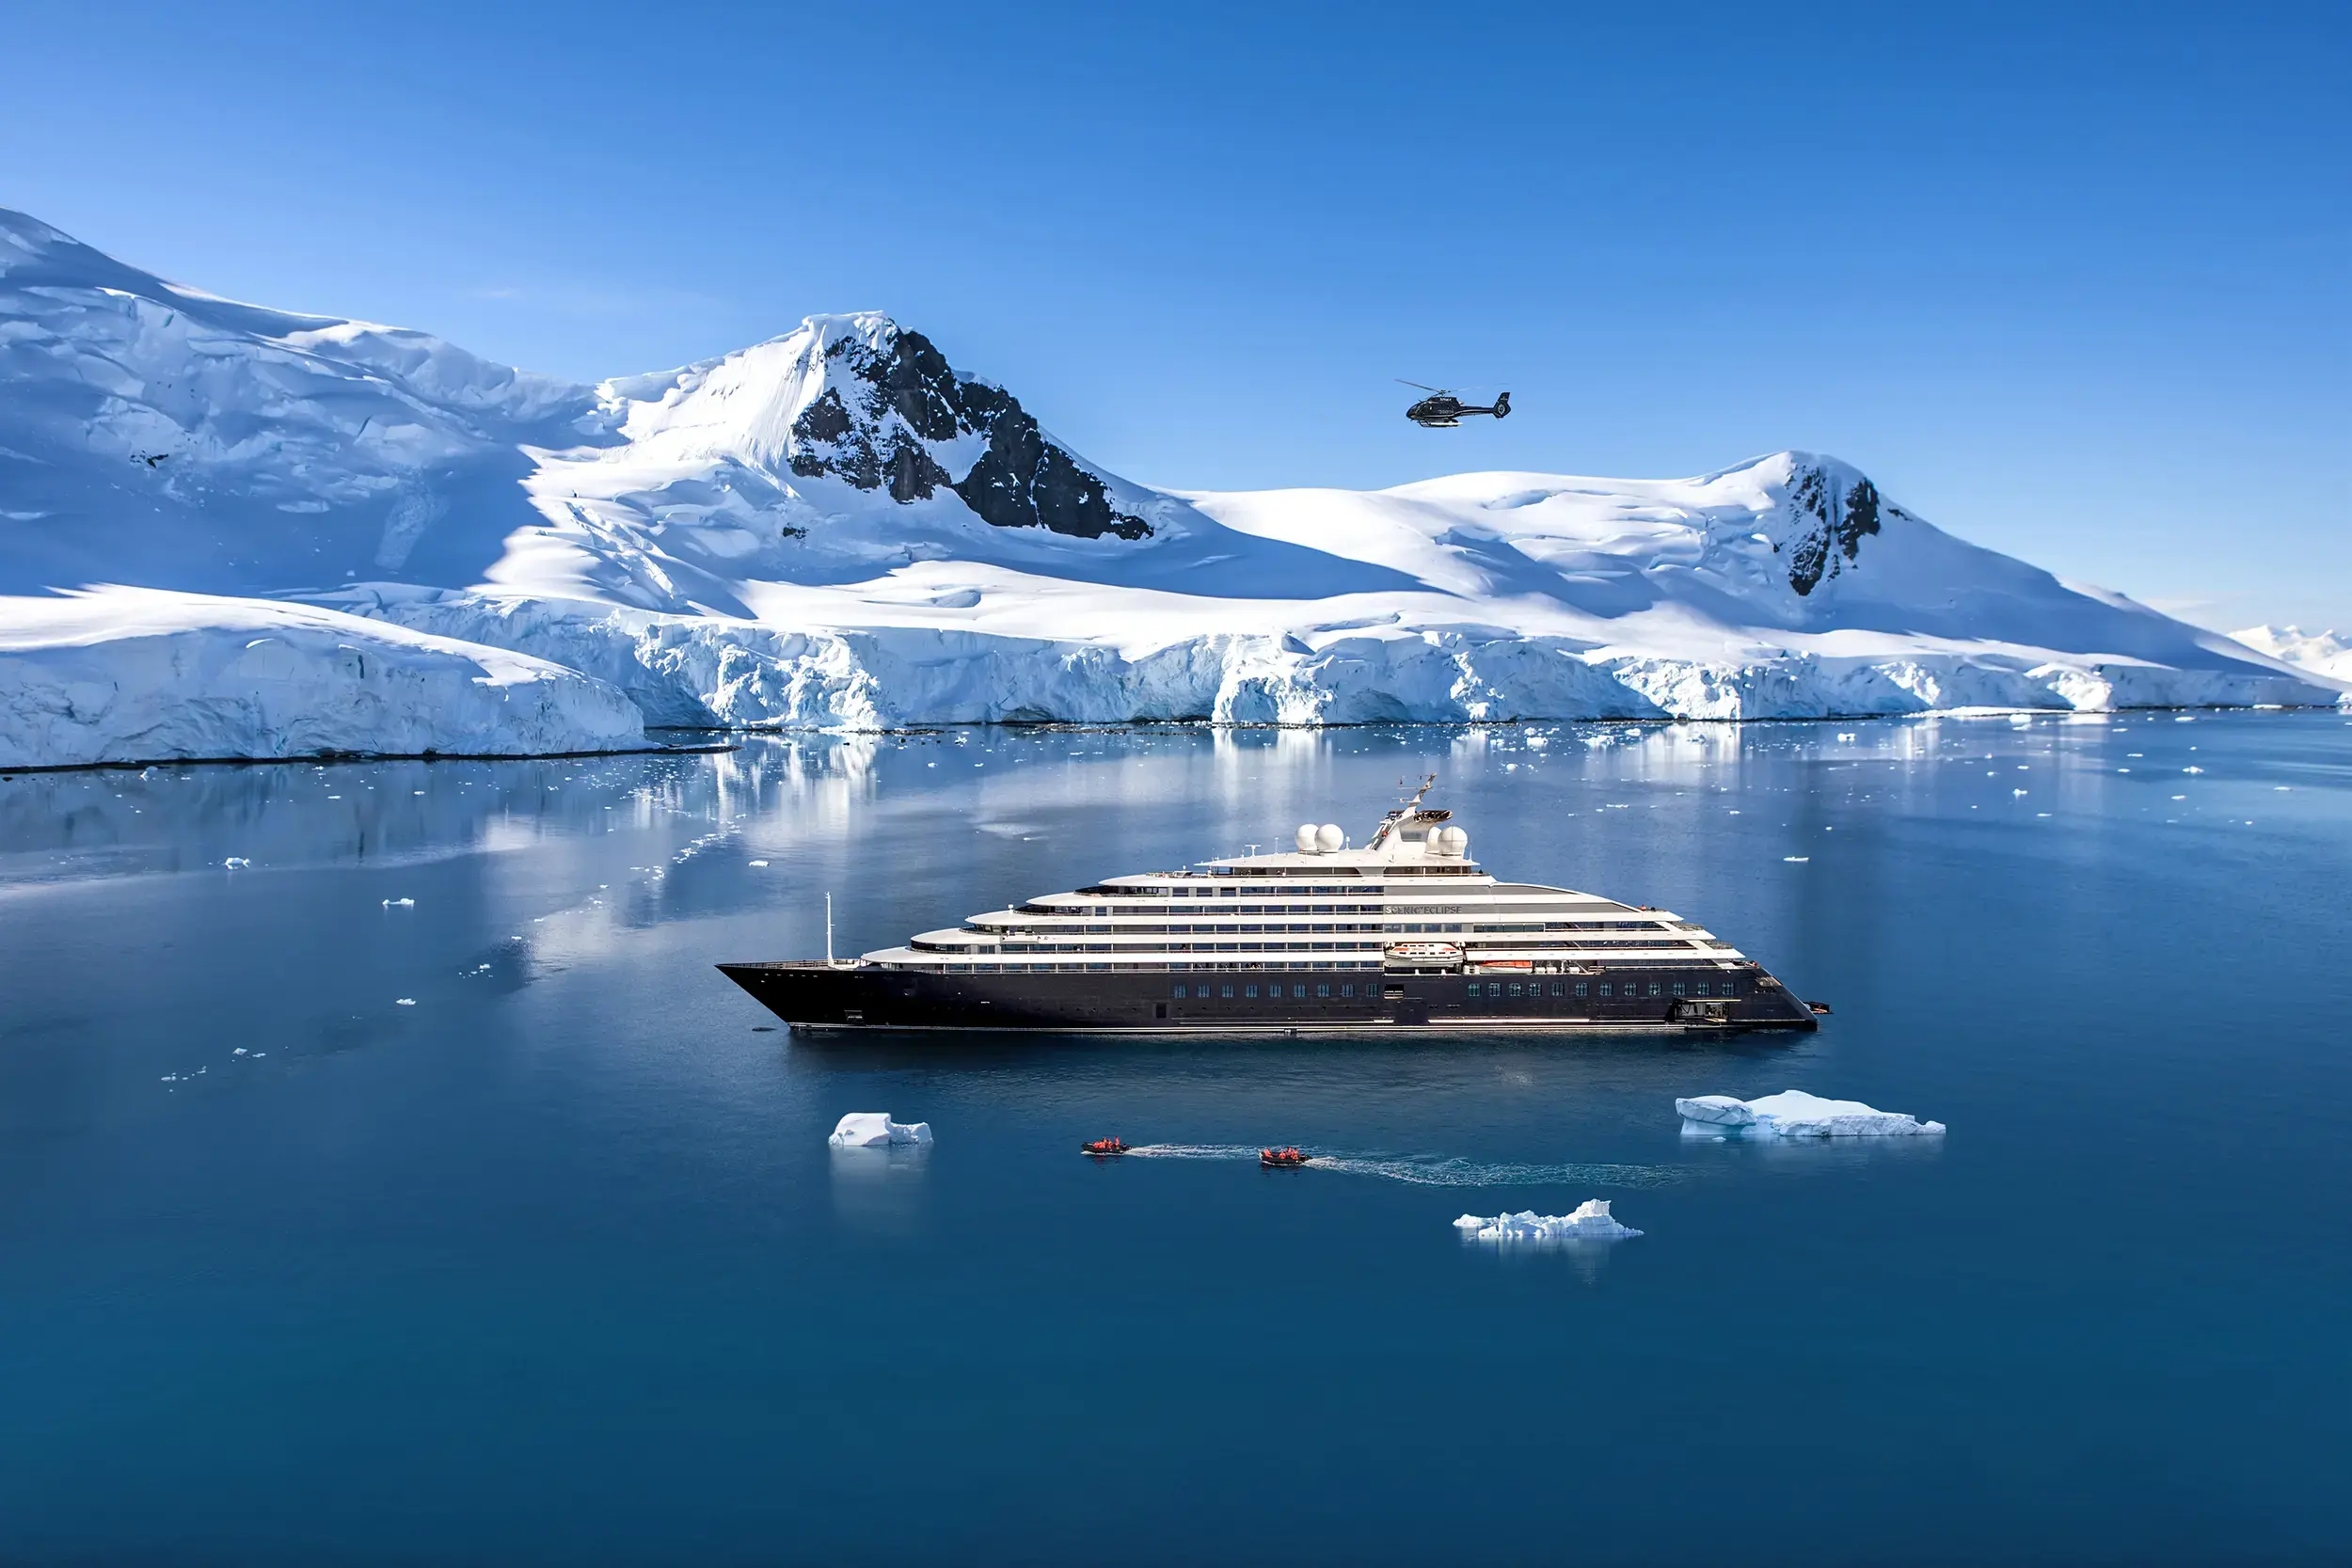 argentina to antarctica cruise price